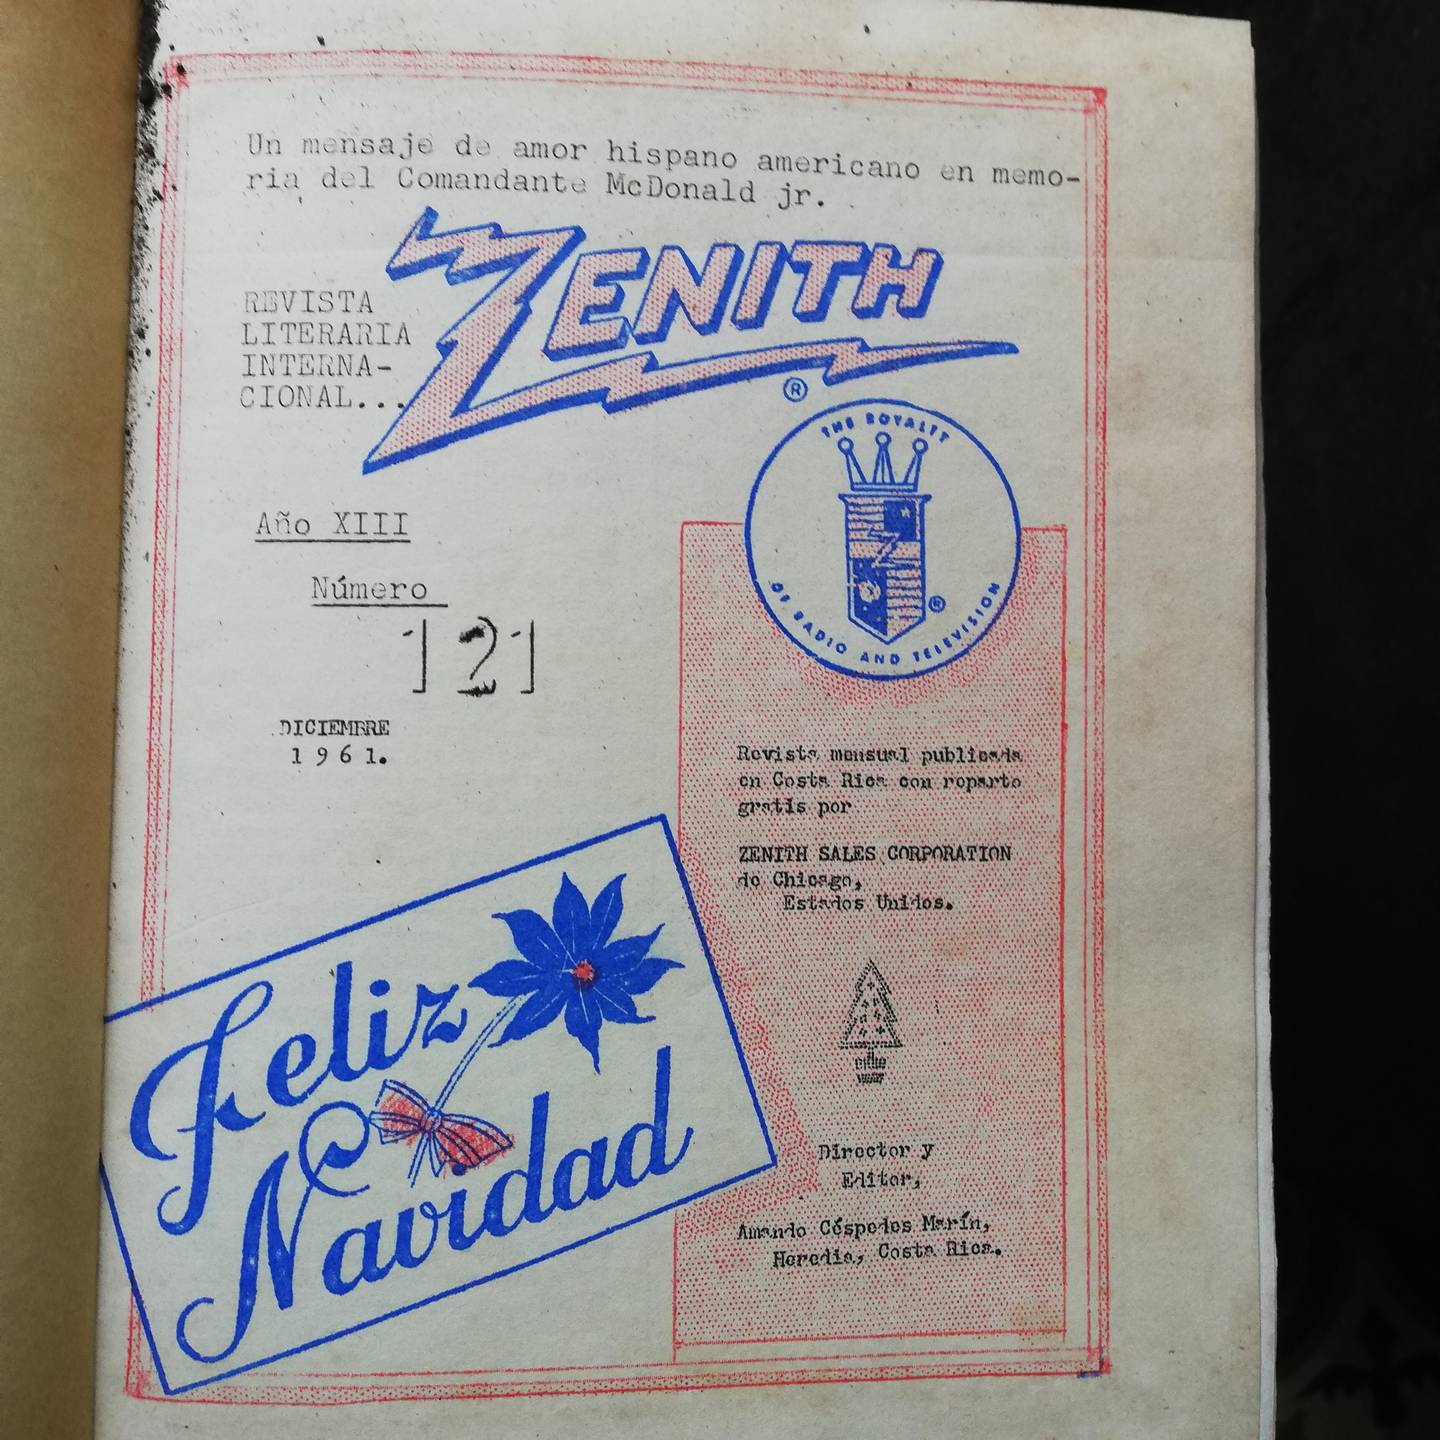 En 1923 un costarricense, Amando Céspedes Marín, recibió las primeras señales radiales de onda corta de la historia de Costa Rica